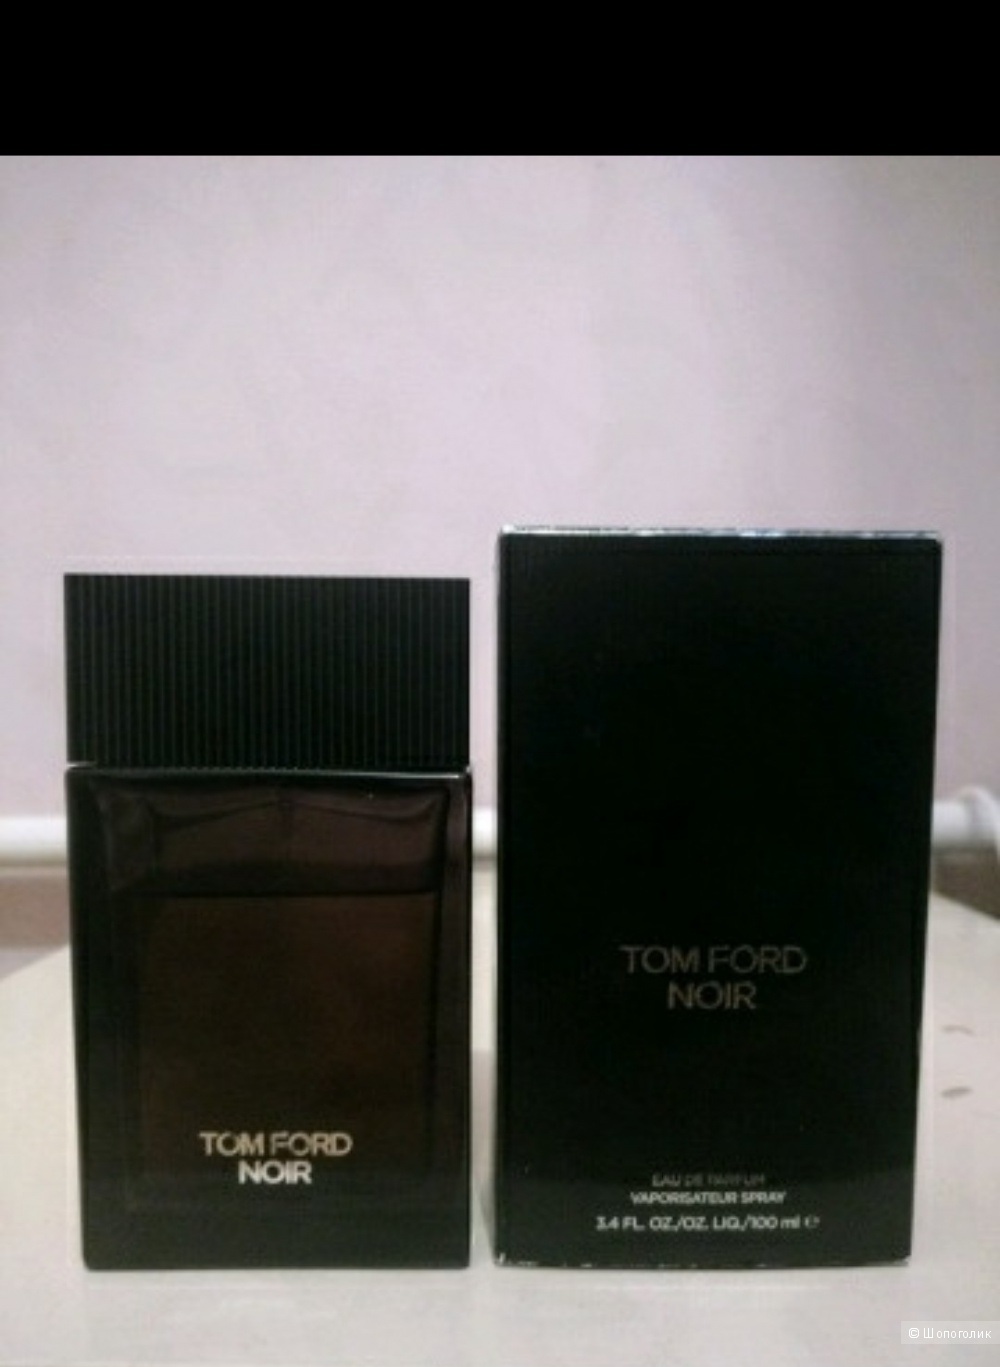 Tom Ford,мужская парфюмерная вода ,100мл.